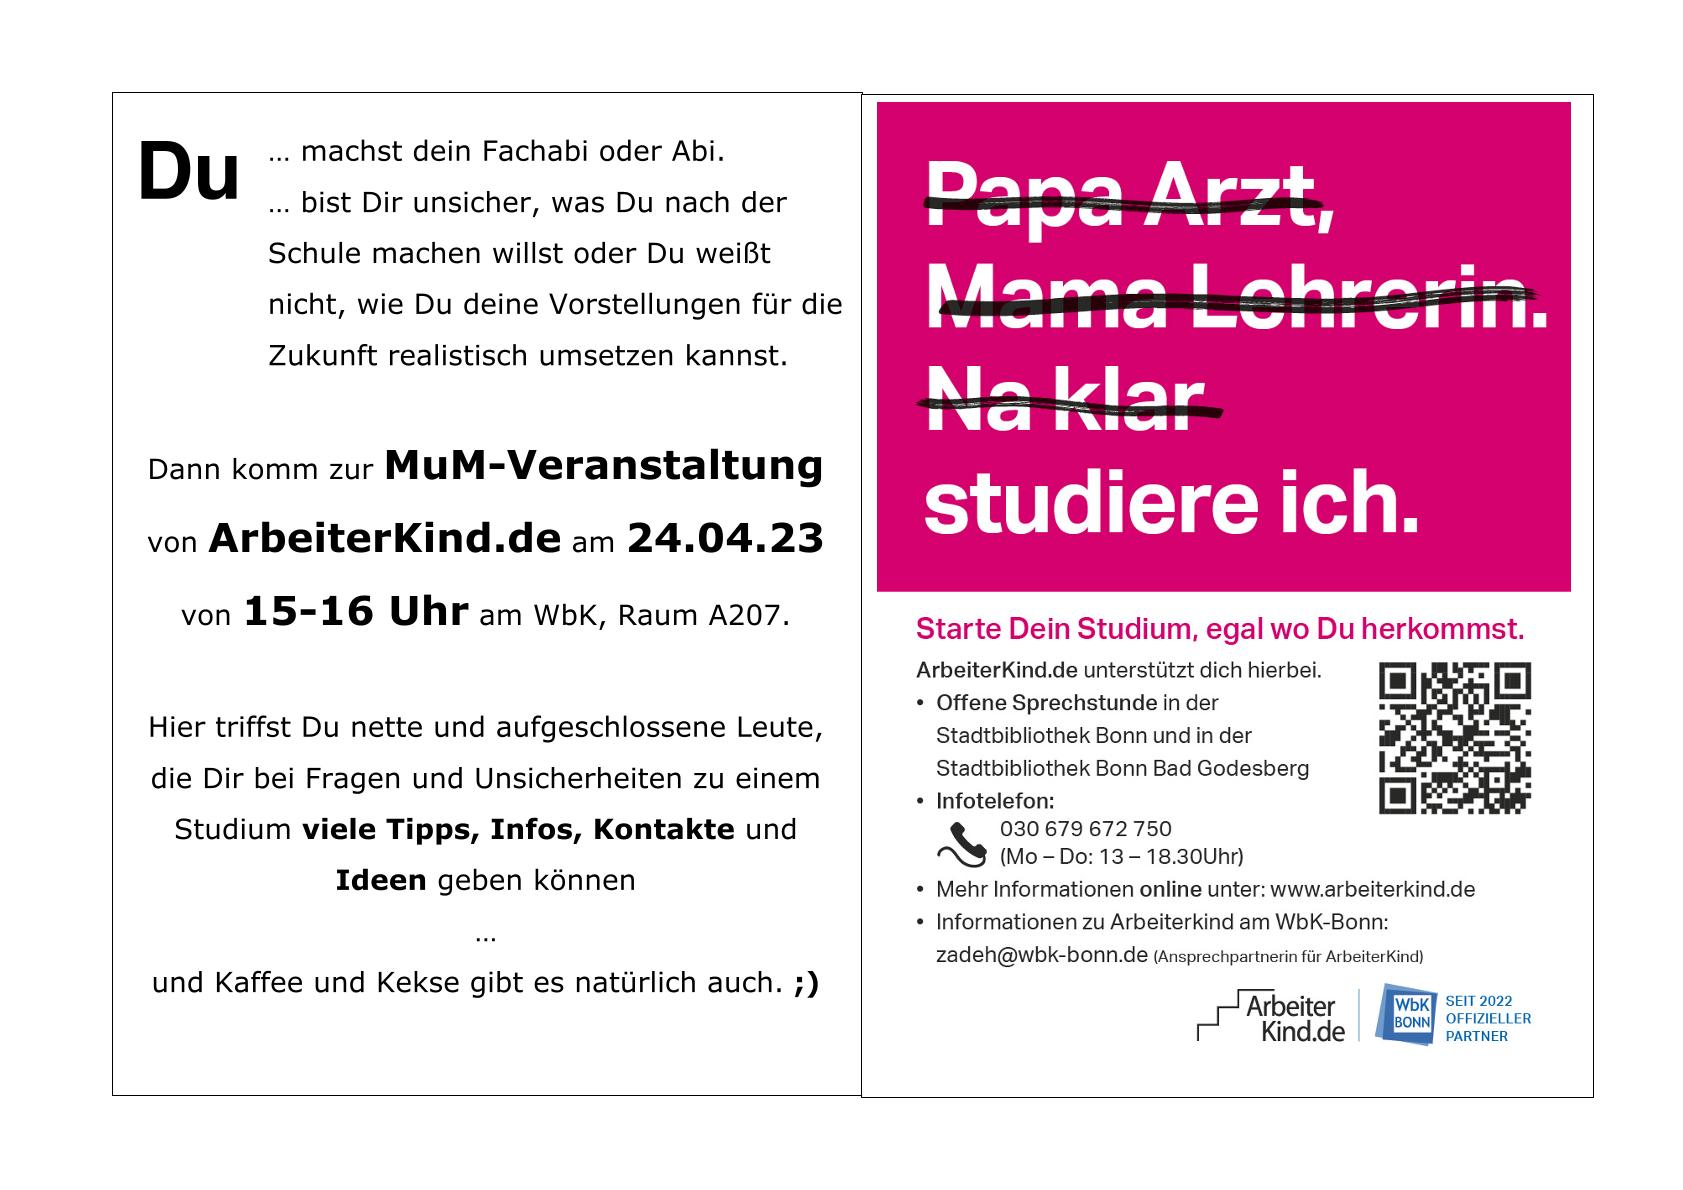 Plakat für die Veranstaltung von ArbeiterKind.de am 24.04.2023